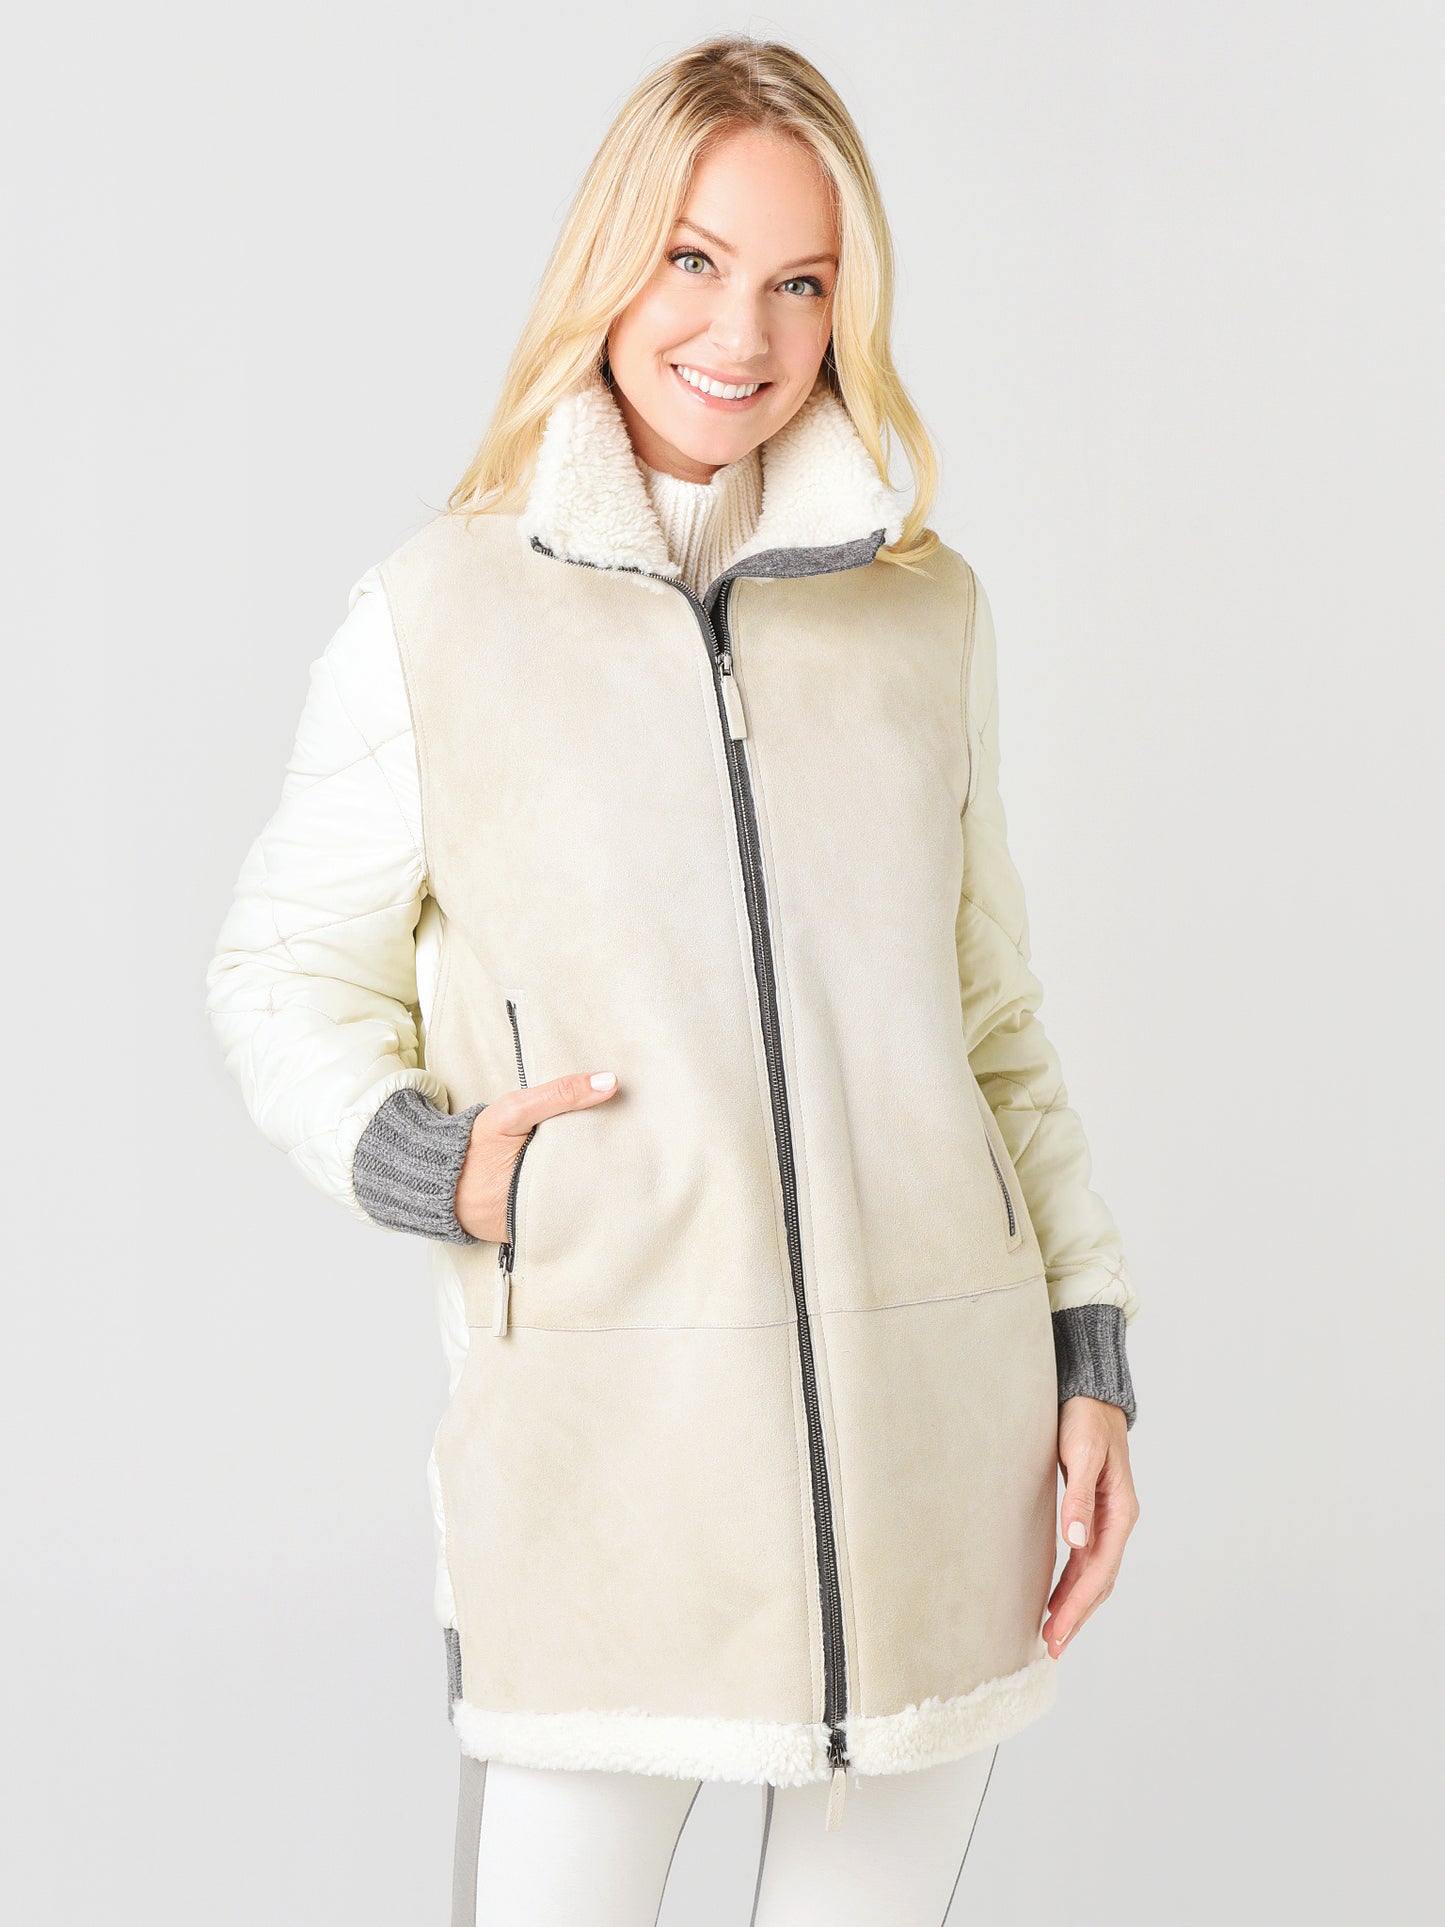 Frauenschuh Women's Amelia Multi Coat